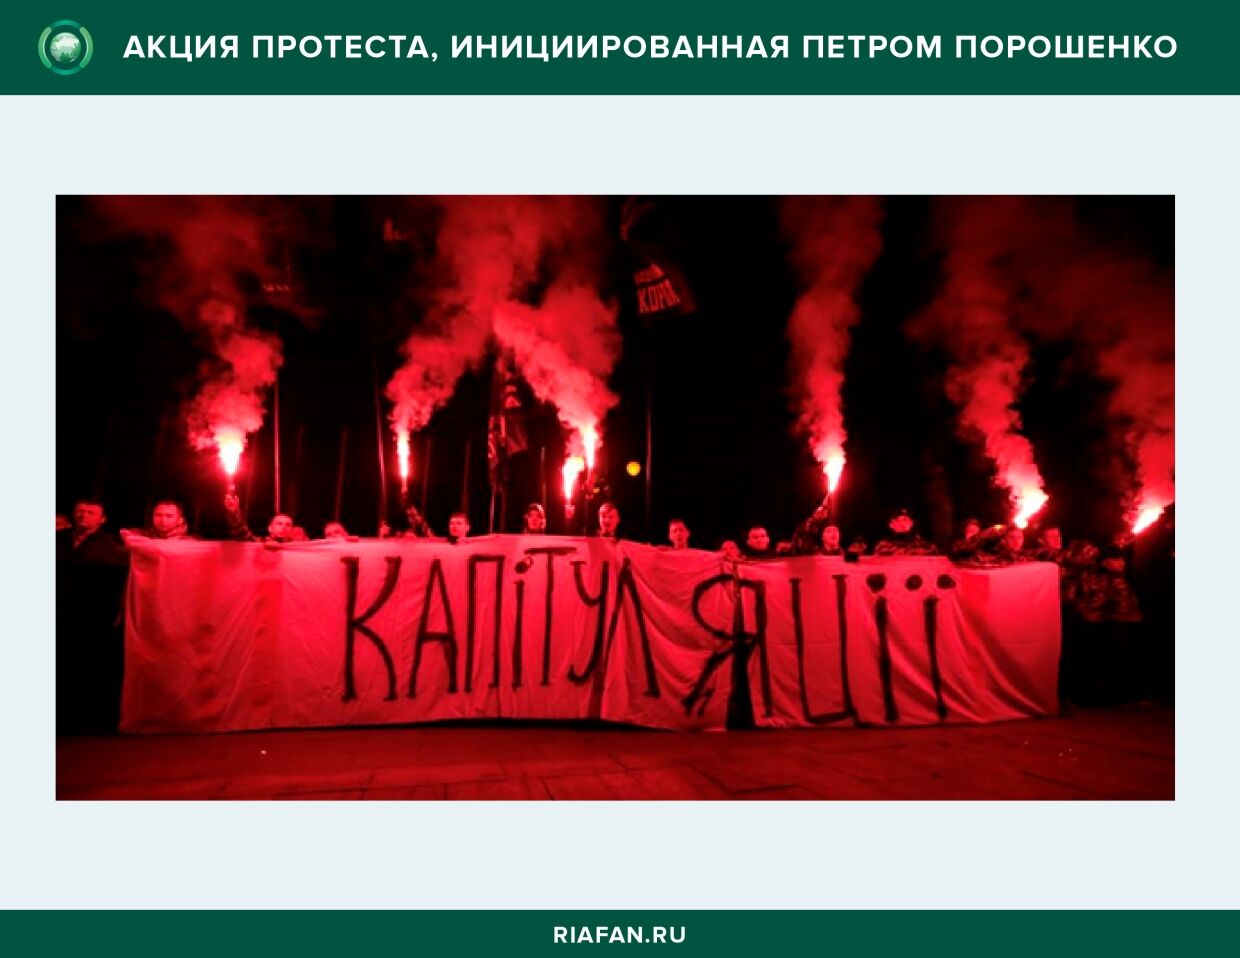 Фото с Акции протеста в Киеве, инициированные Петром Порошенко